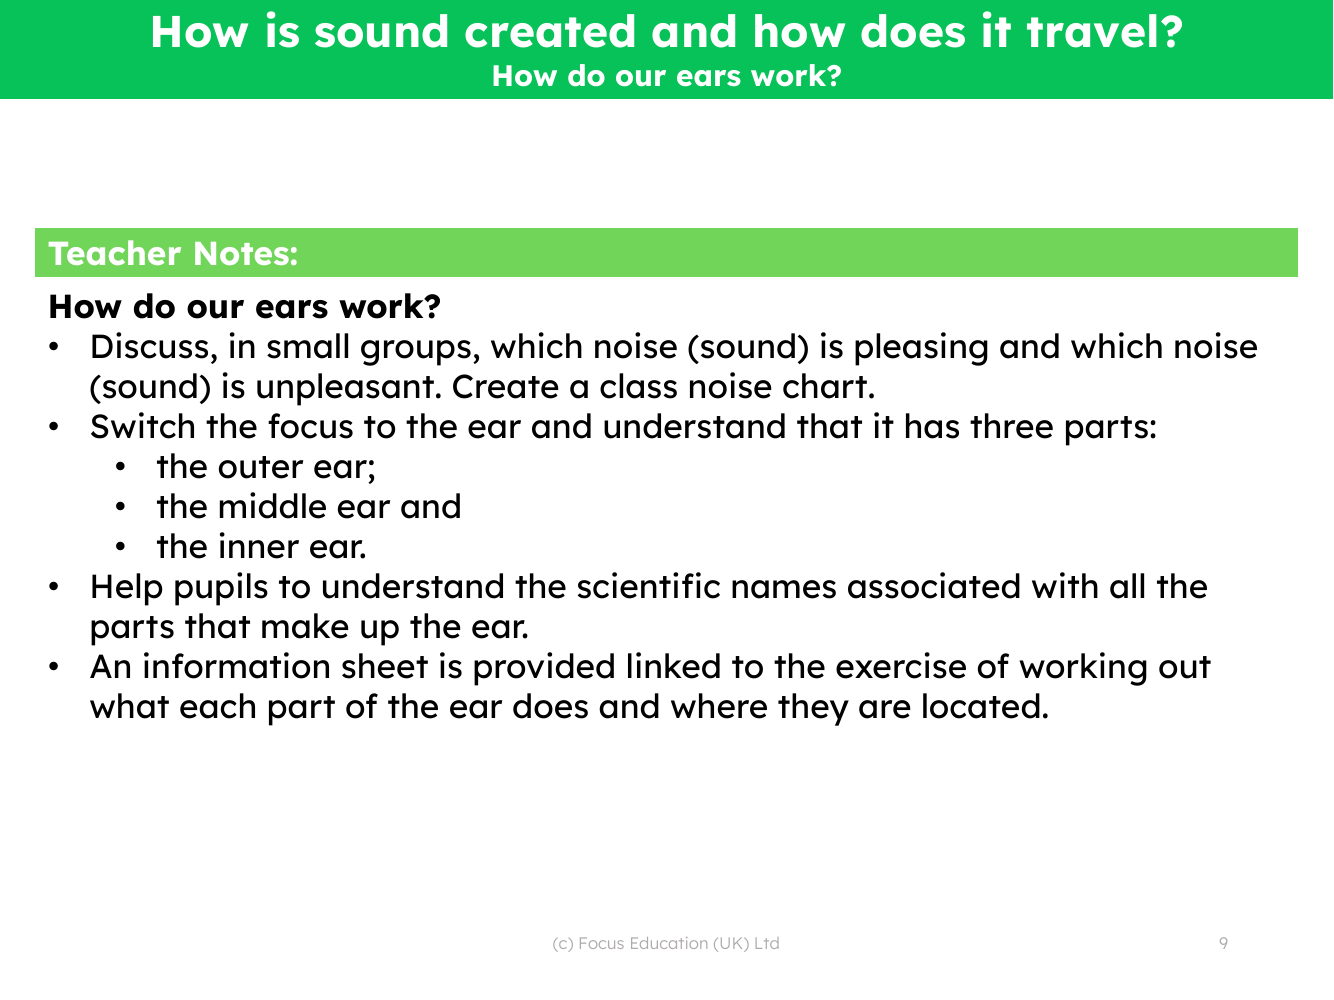 How do our ears work? - Teacher notes